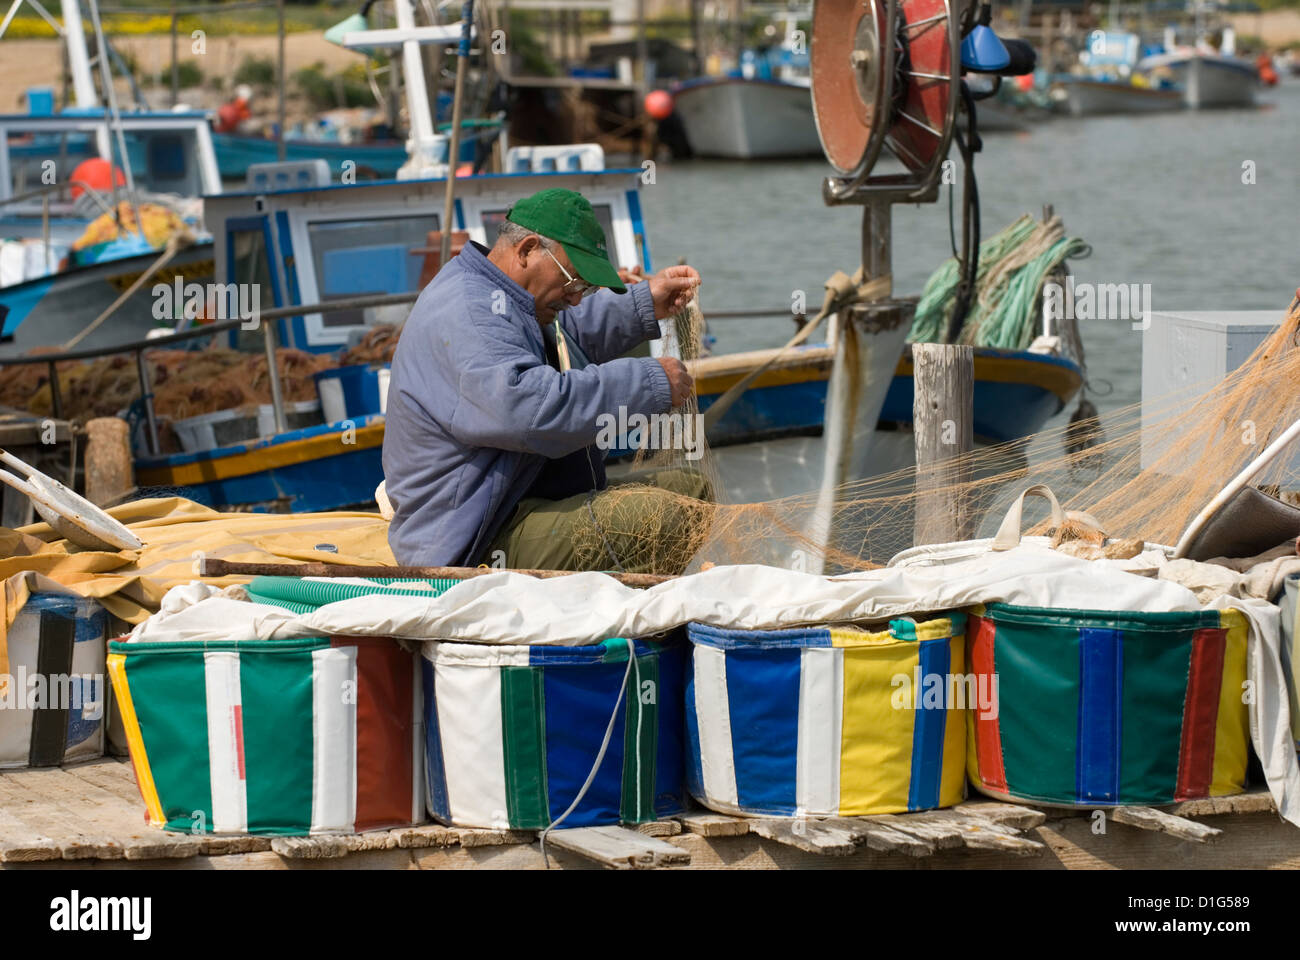 Fisherman mending nets, Potamos Tou Liopetri, Cyprus, Europe Stock Photo